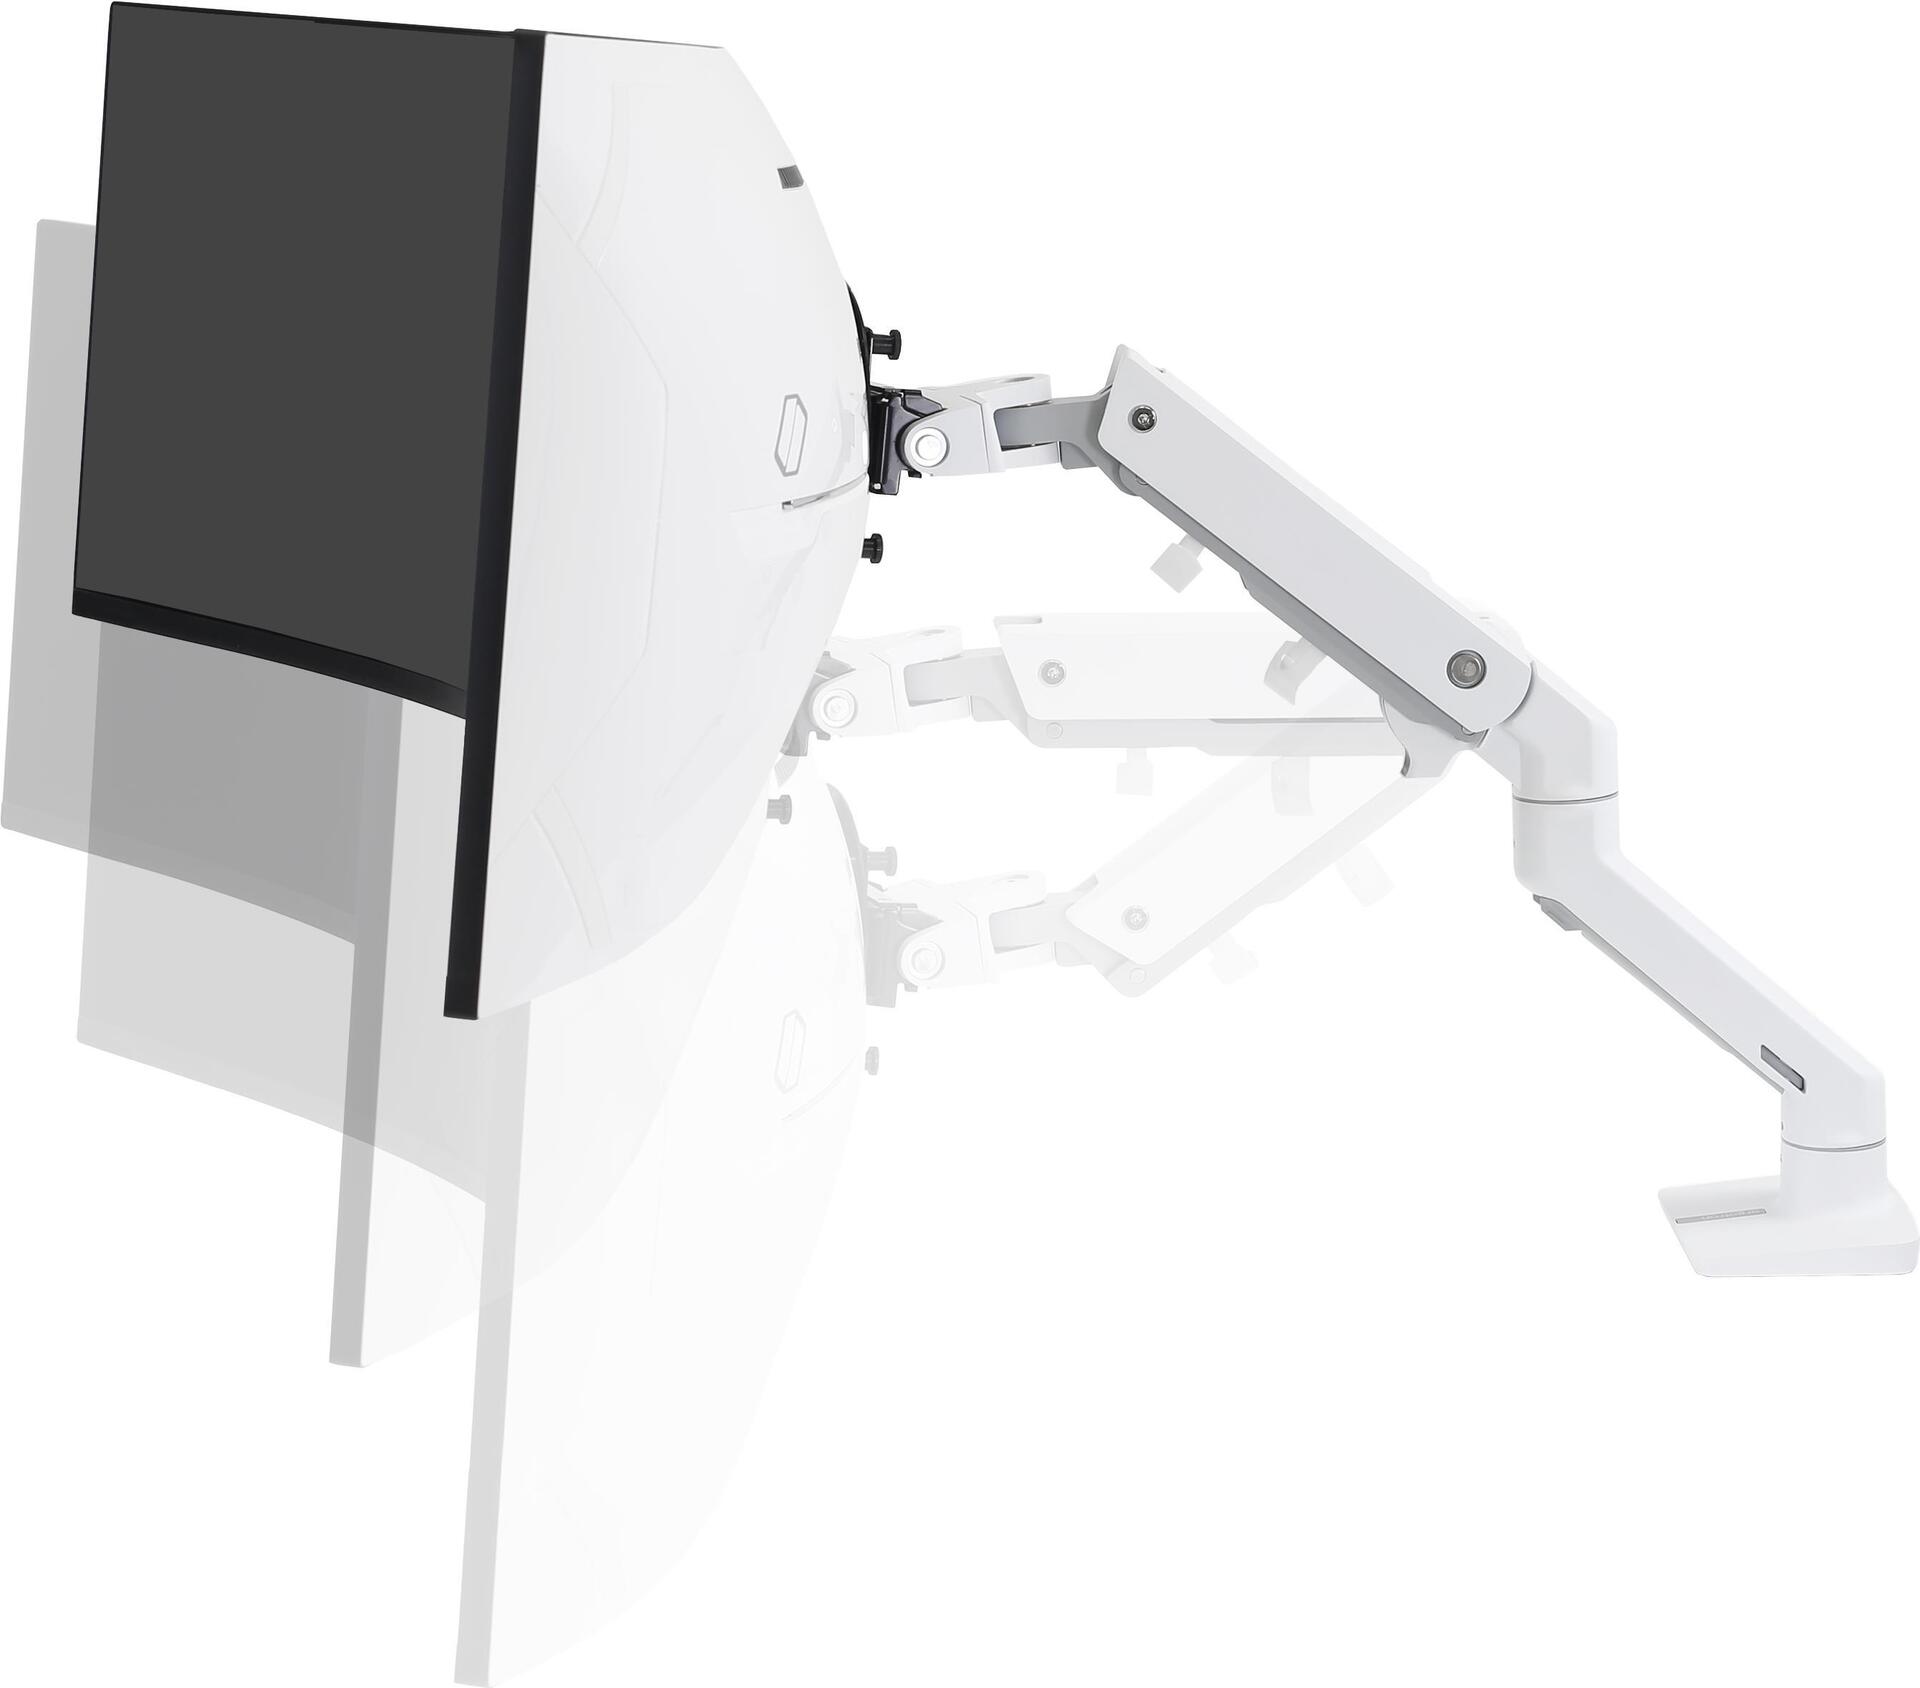 ERGOTRON HX HD Monitor Arm in Weiß Tischhalterung mit patentierter  CF-Technologie für ultrawide Monitore bis 124,50cm 49 , 9,1- 19,1 kg, bis  zu 1000R Wölbungsradius, VESA Standard 45-647-216